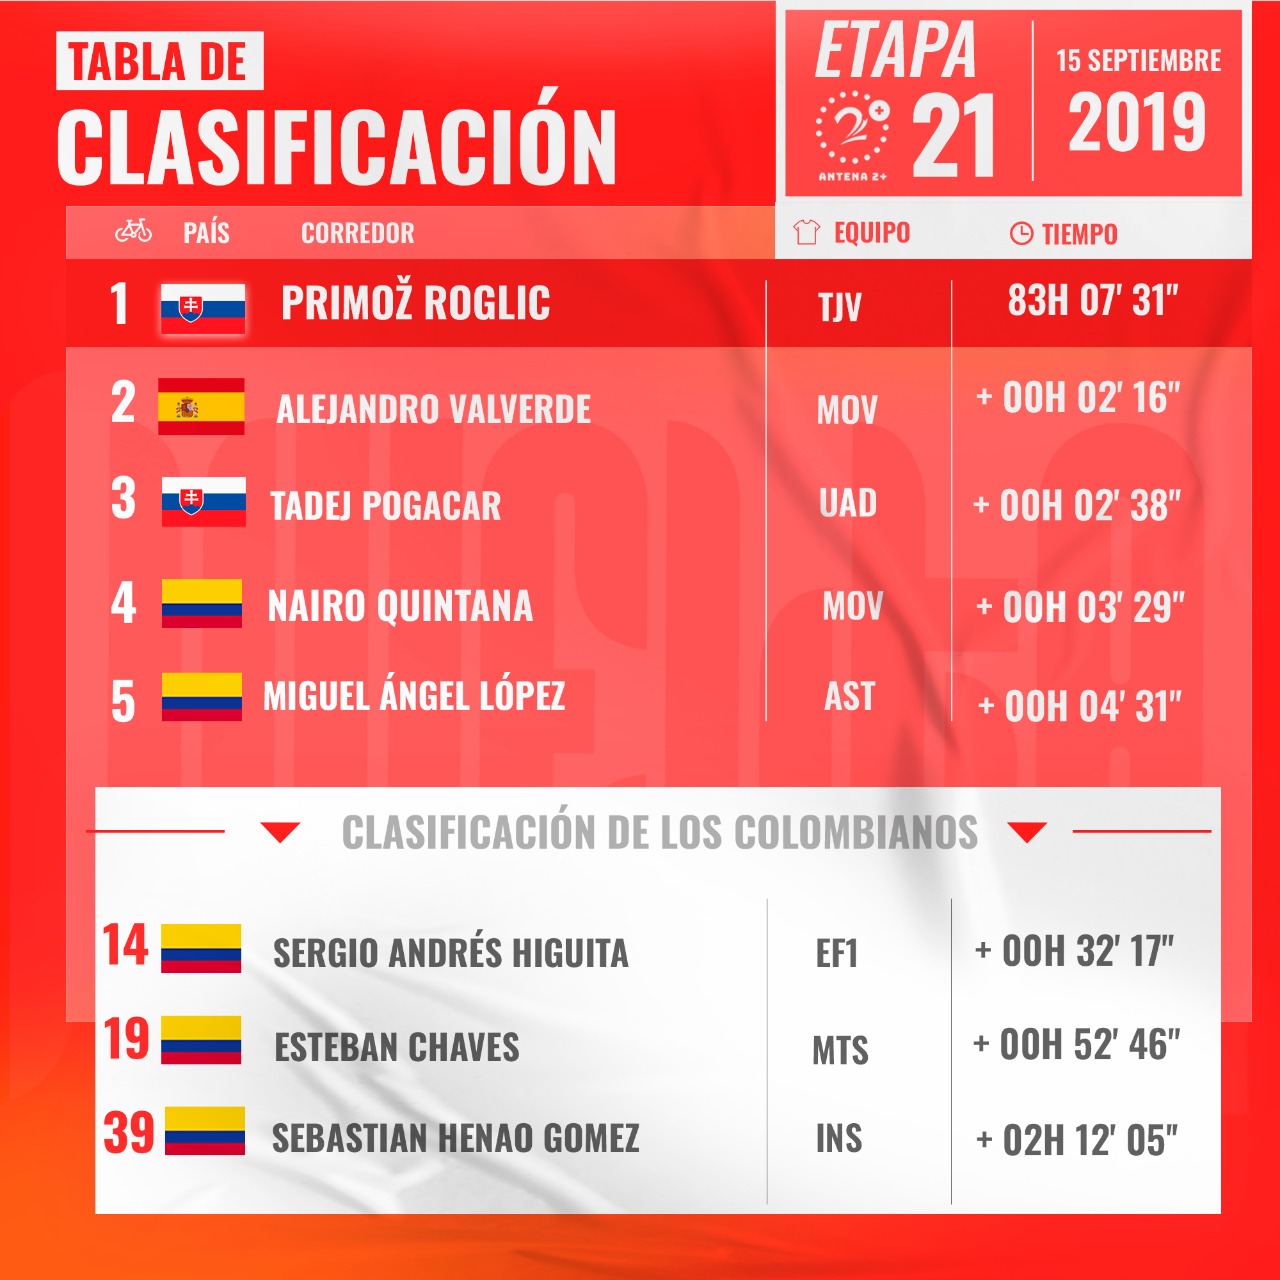 Vuelta a España 2019, clasificación general, etapa 21